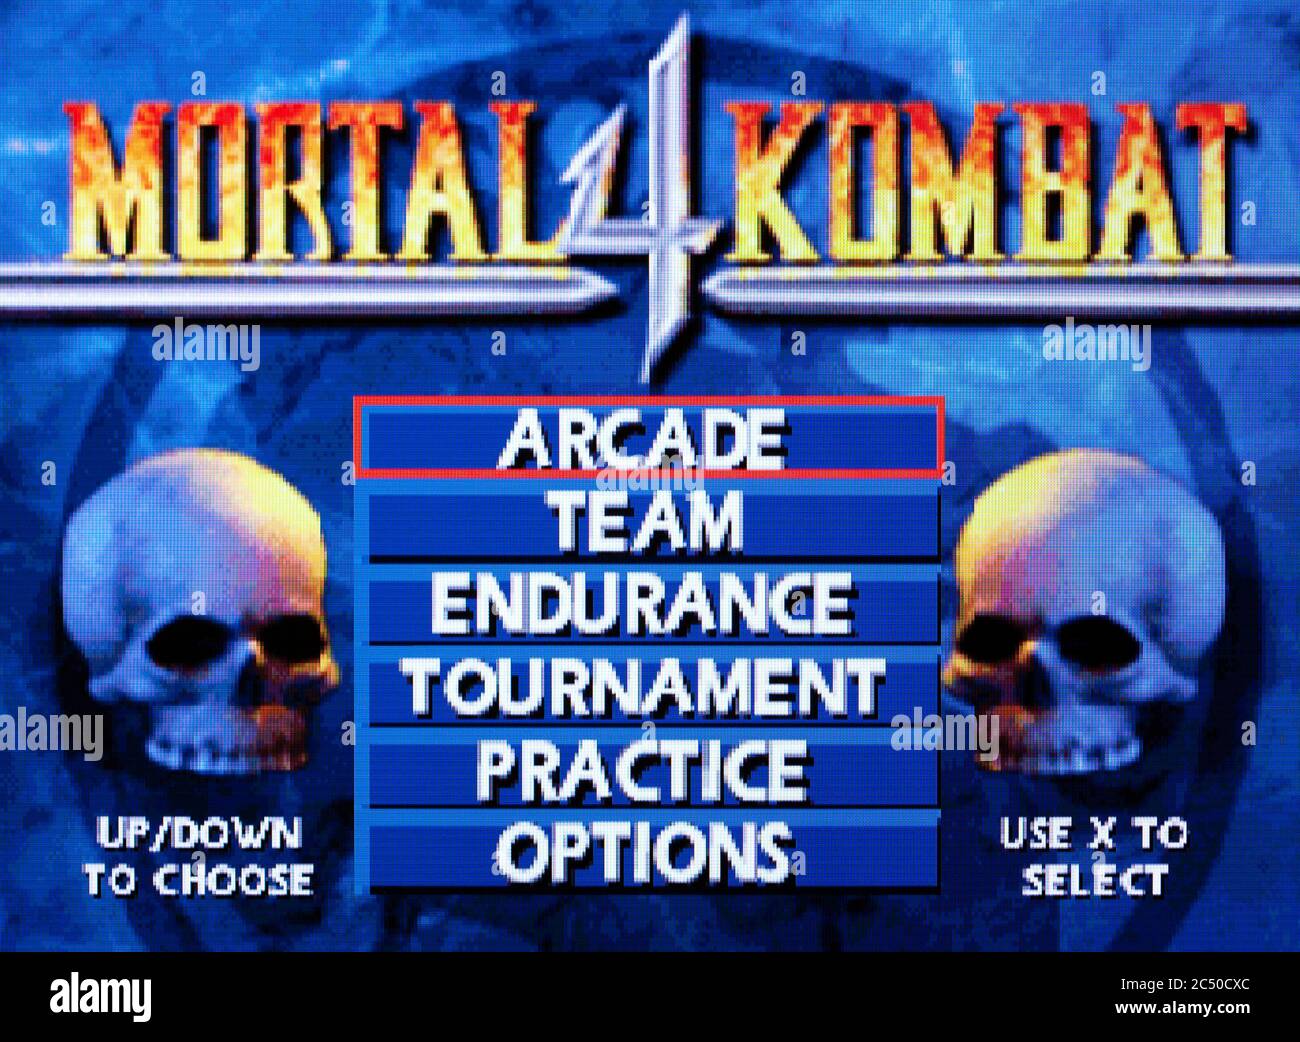 Buy Mortal Kombat 4 for PS